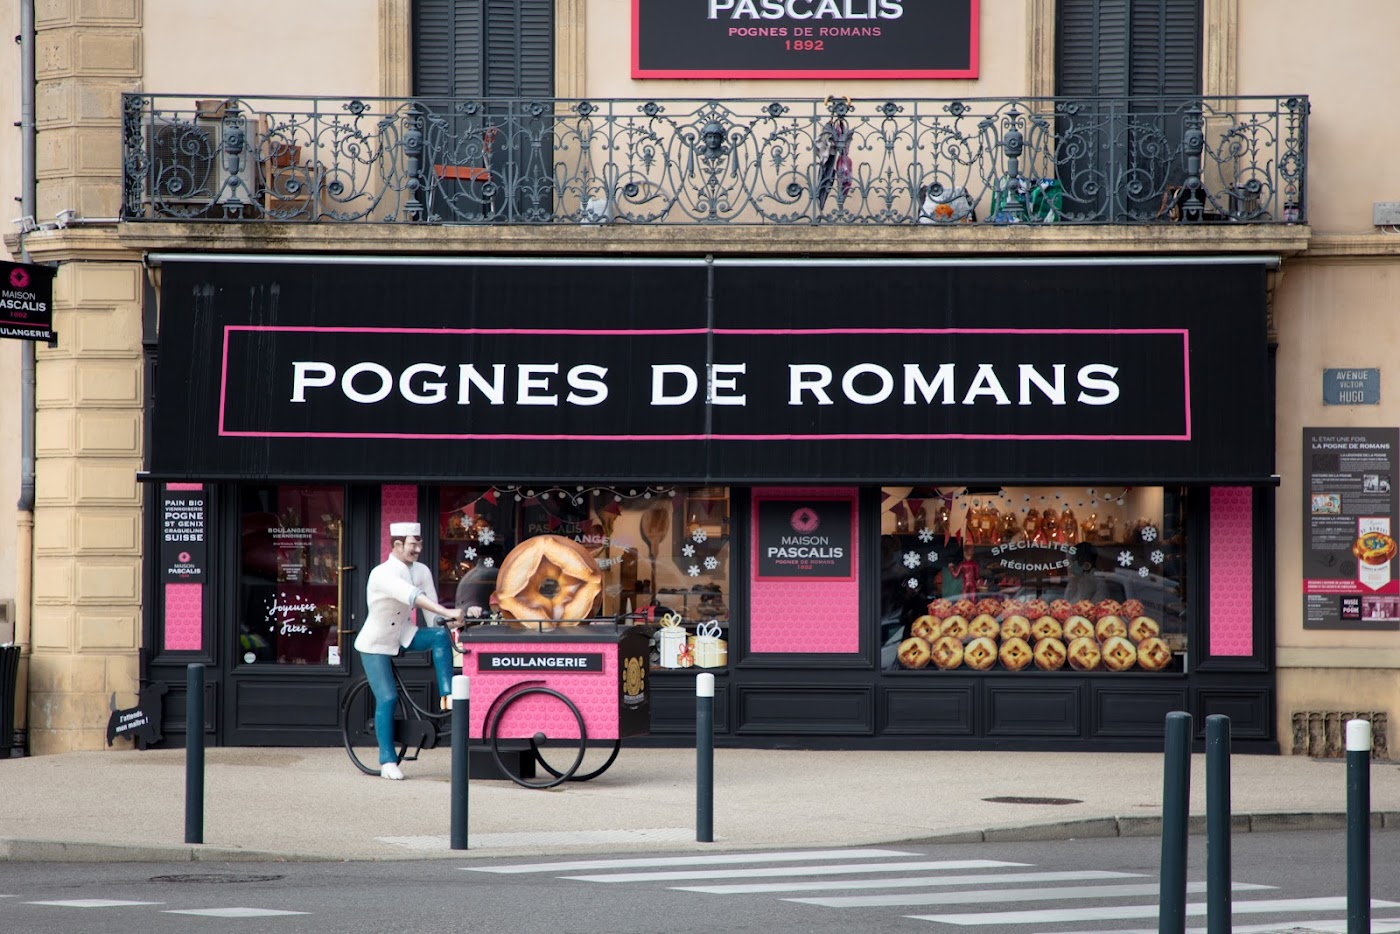 Boulangerie PASCALIS - Pognes de Romans